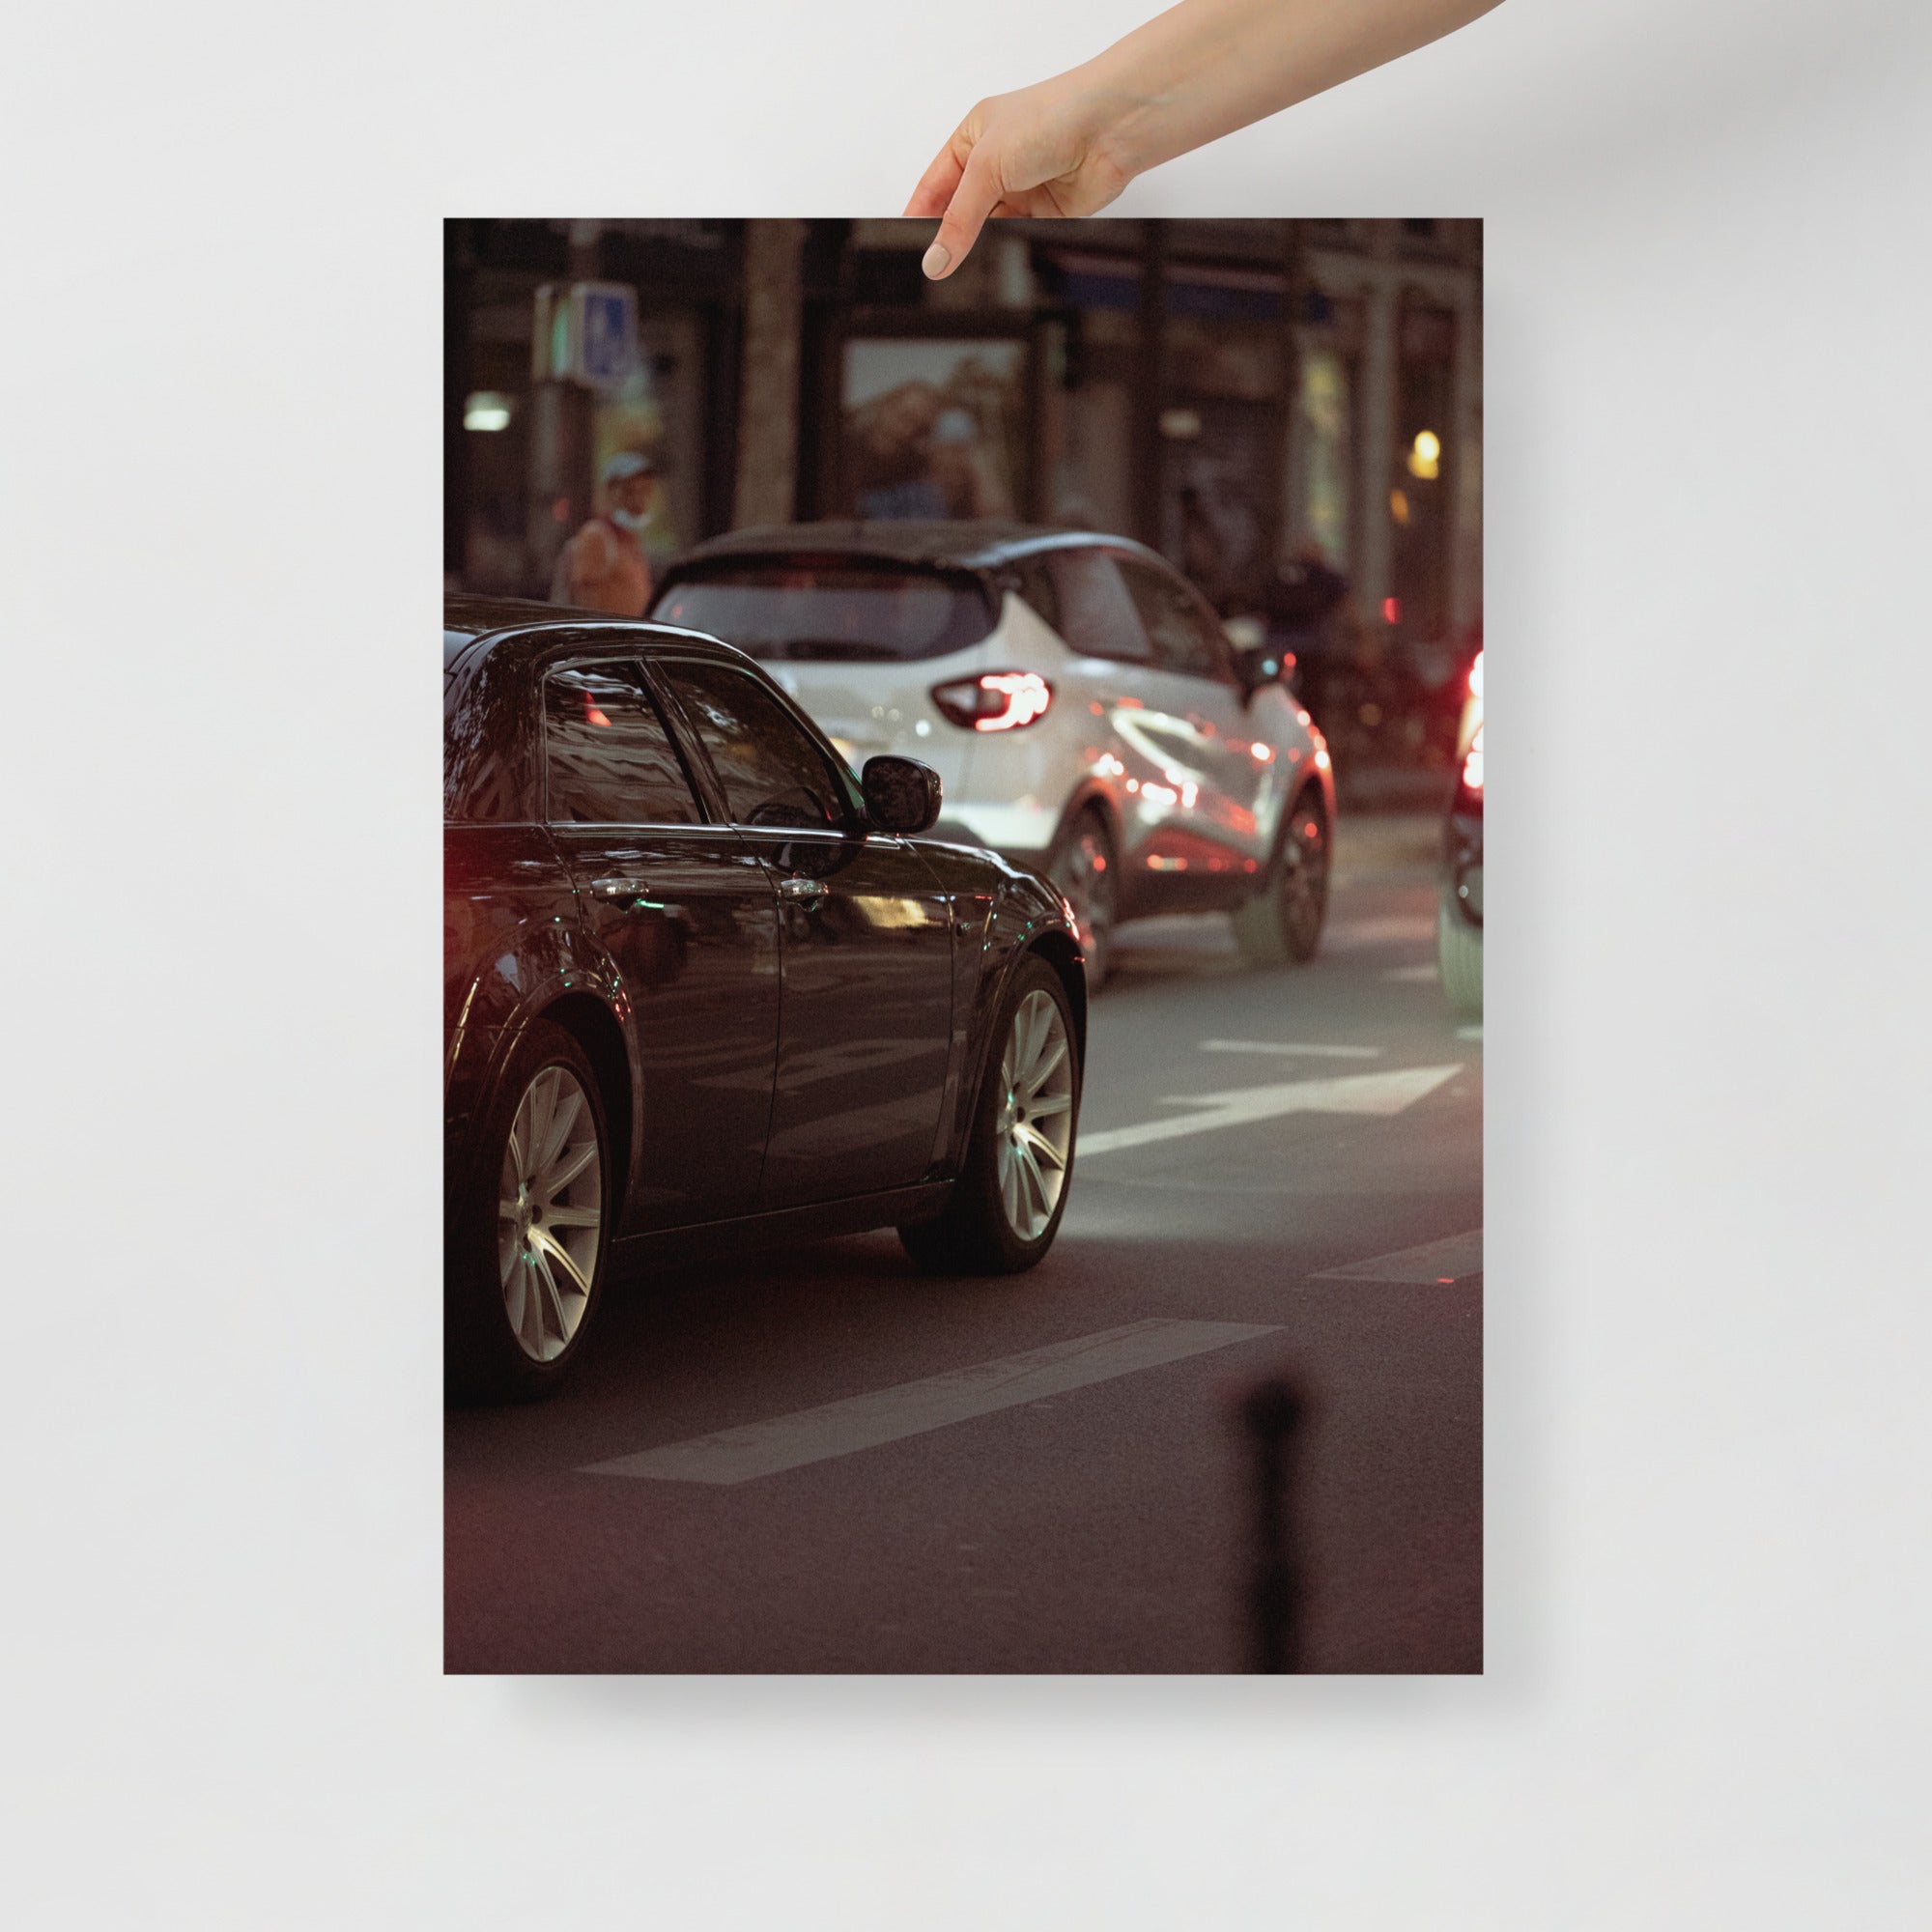 Poster mural - Chrysler 300c – Photographie de voiture – Poster photo, poster XXL, Photo d’art, photographie murale et des posters muraux des photographies de rue unique au monde. La boutique de posters créée par un Photographe français.